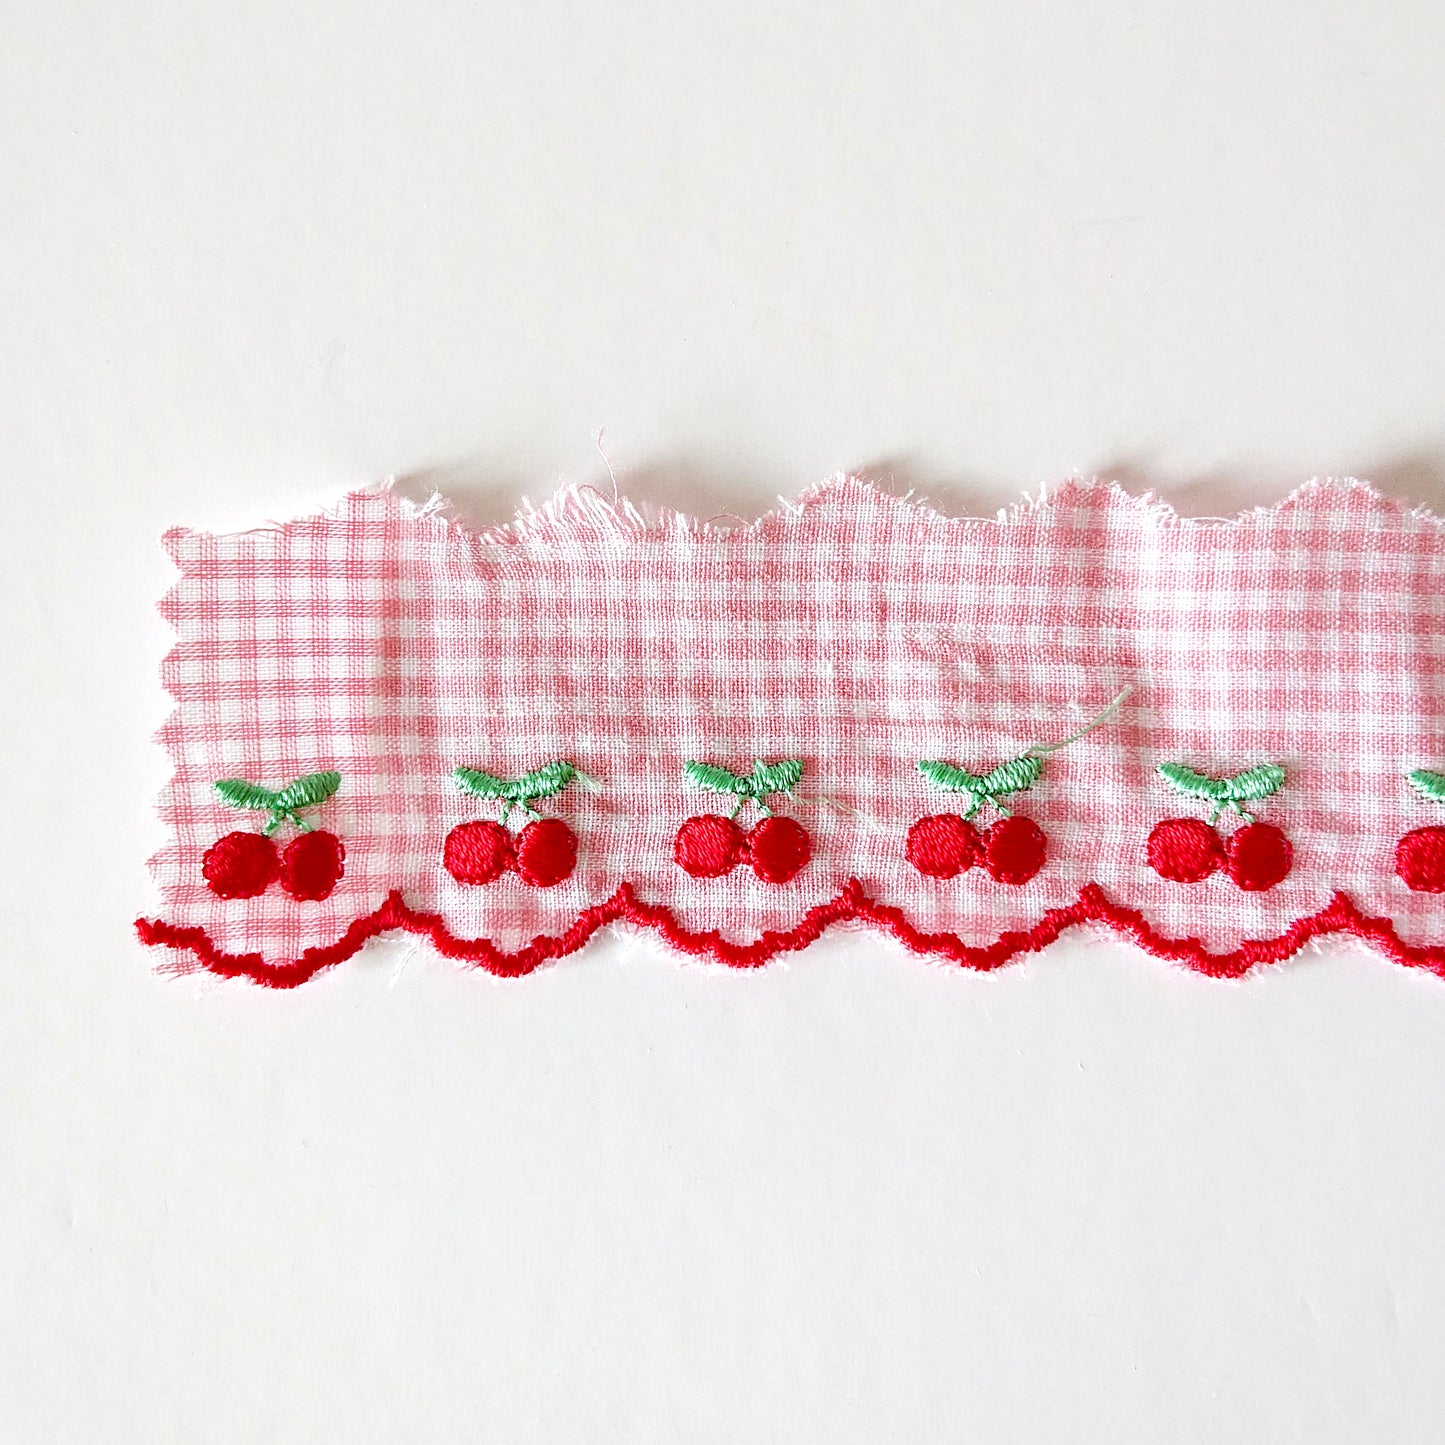 Embroidered Cherry Ribbon - by Atsuko Matsuyama